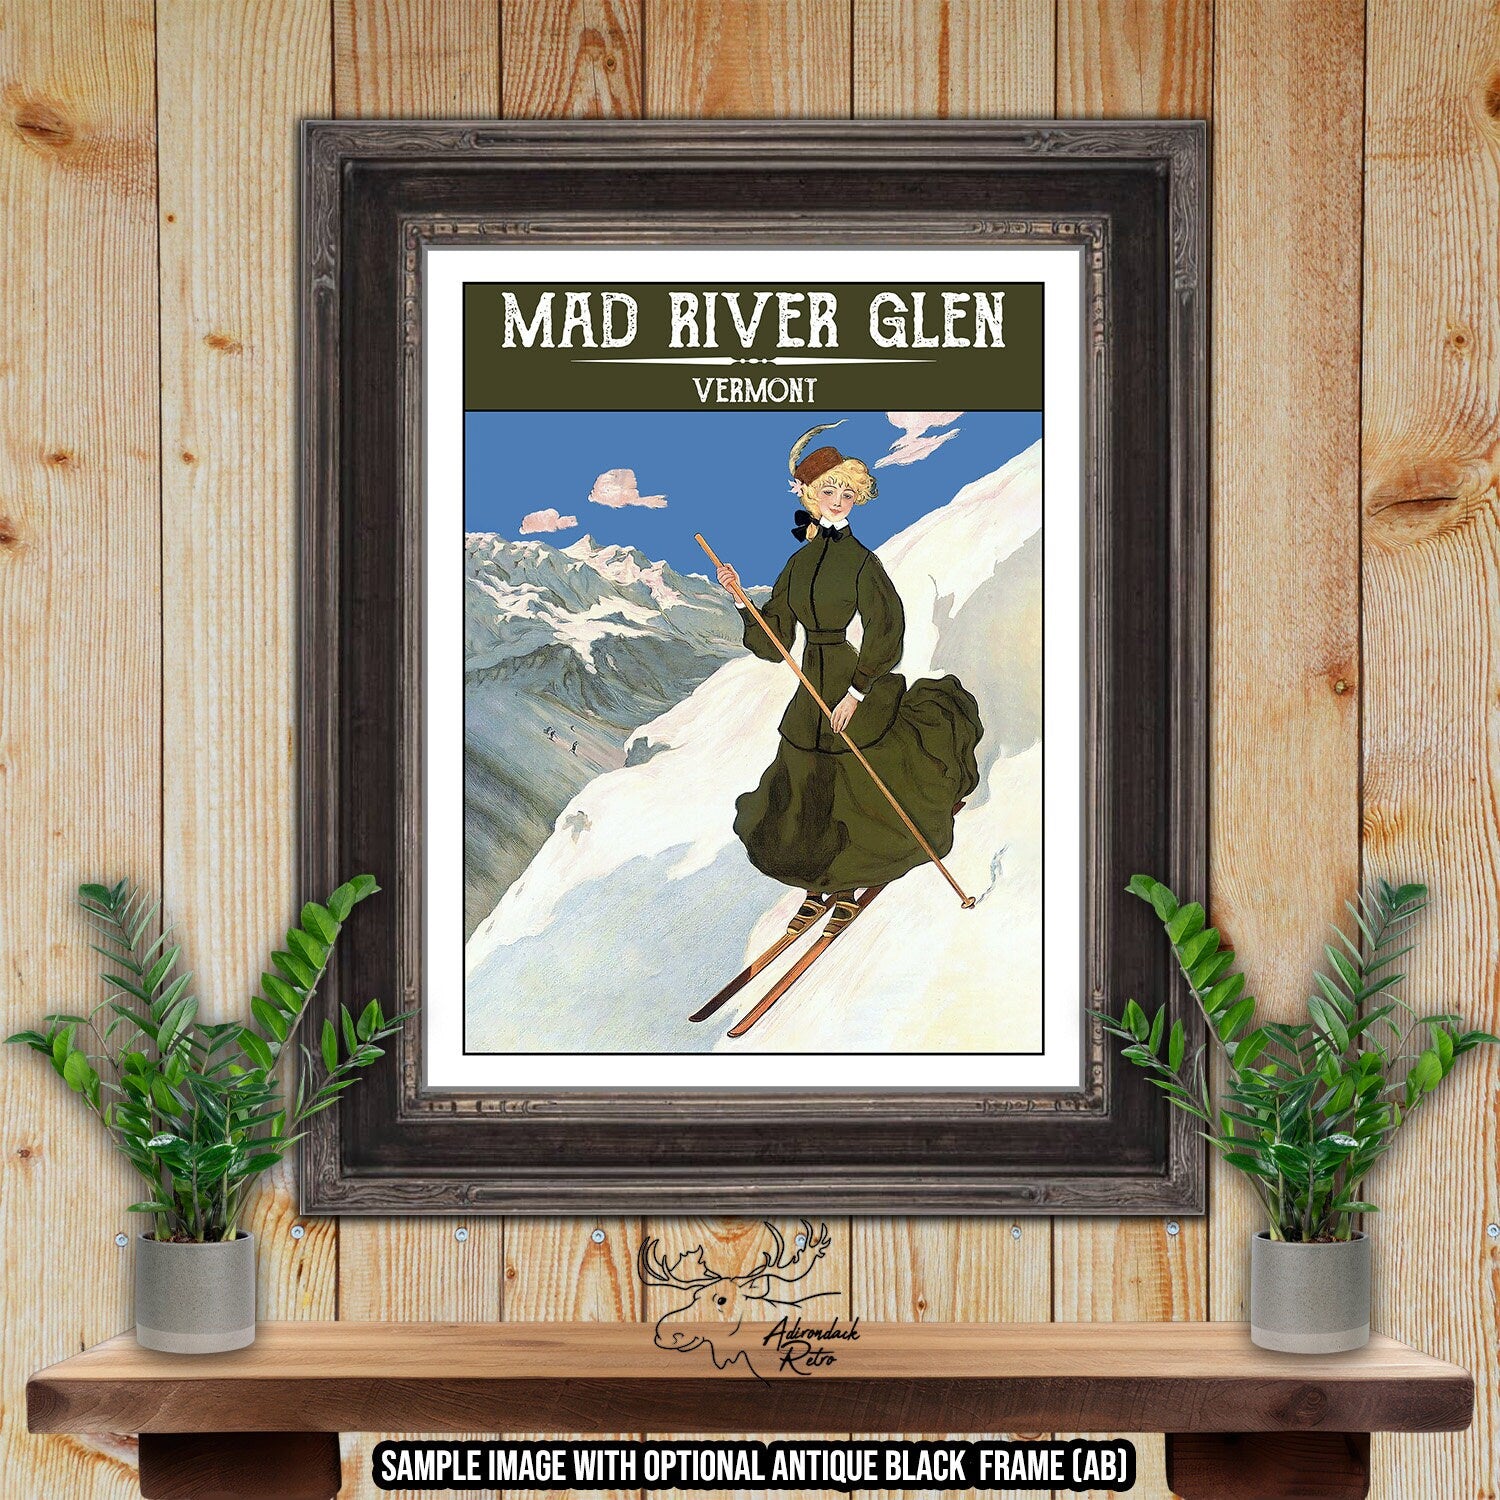 Mad River Glen Vermont Retro Ski Resort Print at Adirondack Retro